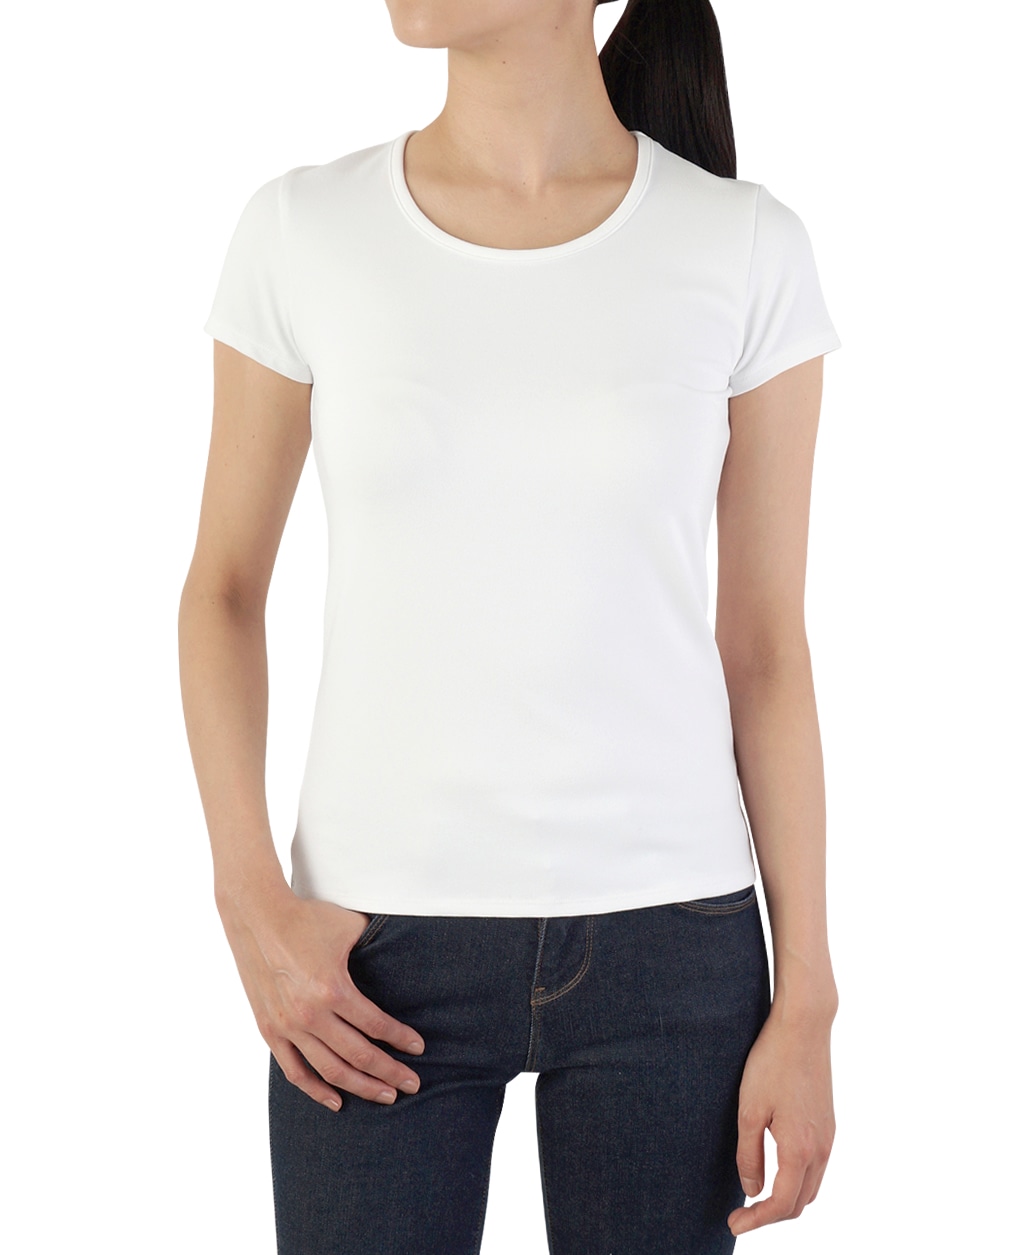 クルーネック半袖Tシャツ(36 白): レディース | メーカーズシャツ鎌倉 公式通販 | 日本製ワイシャツ ネクタイ ブラウス